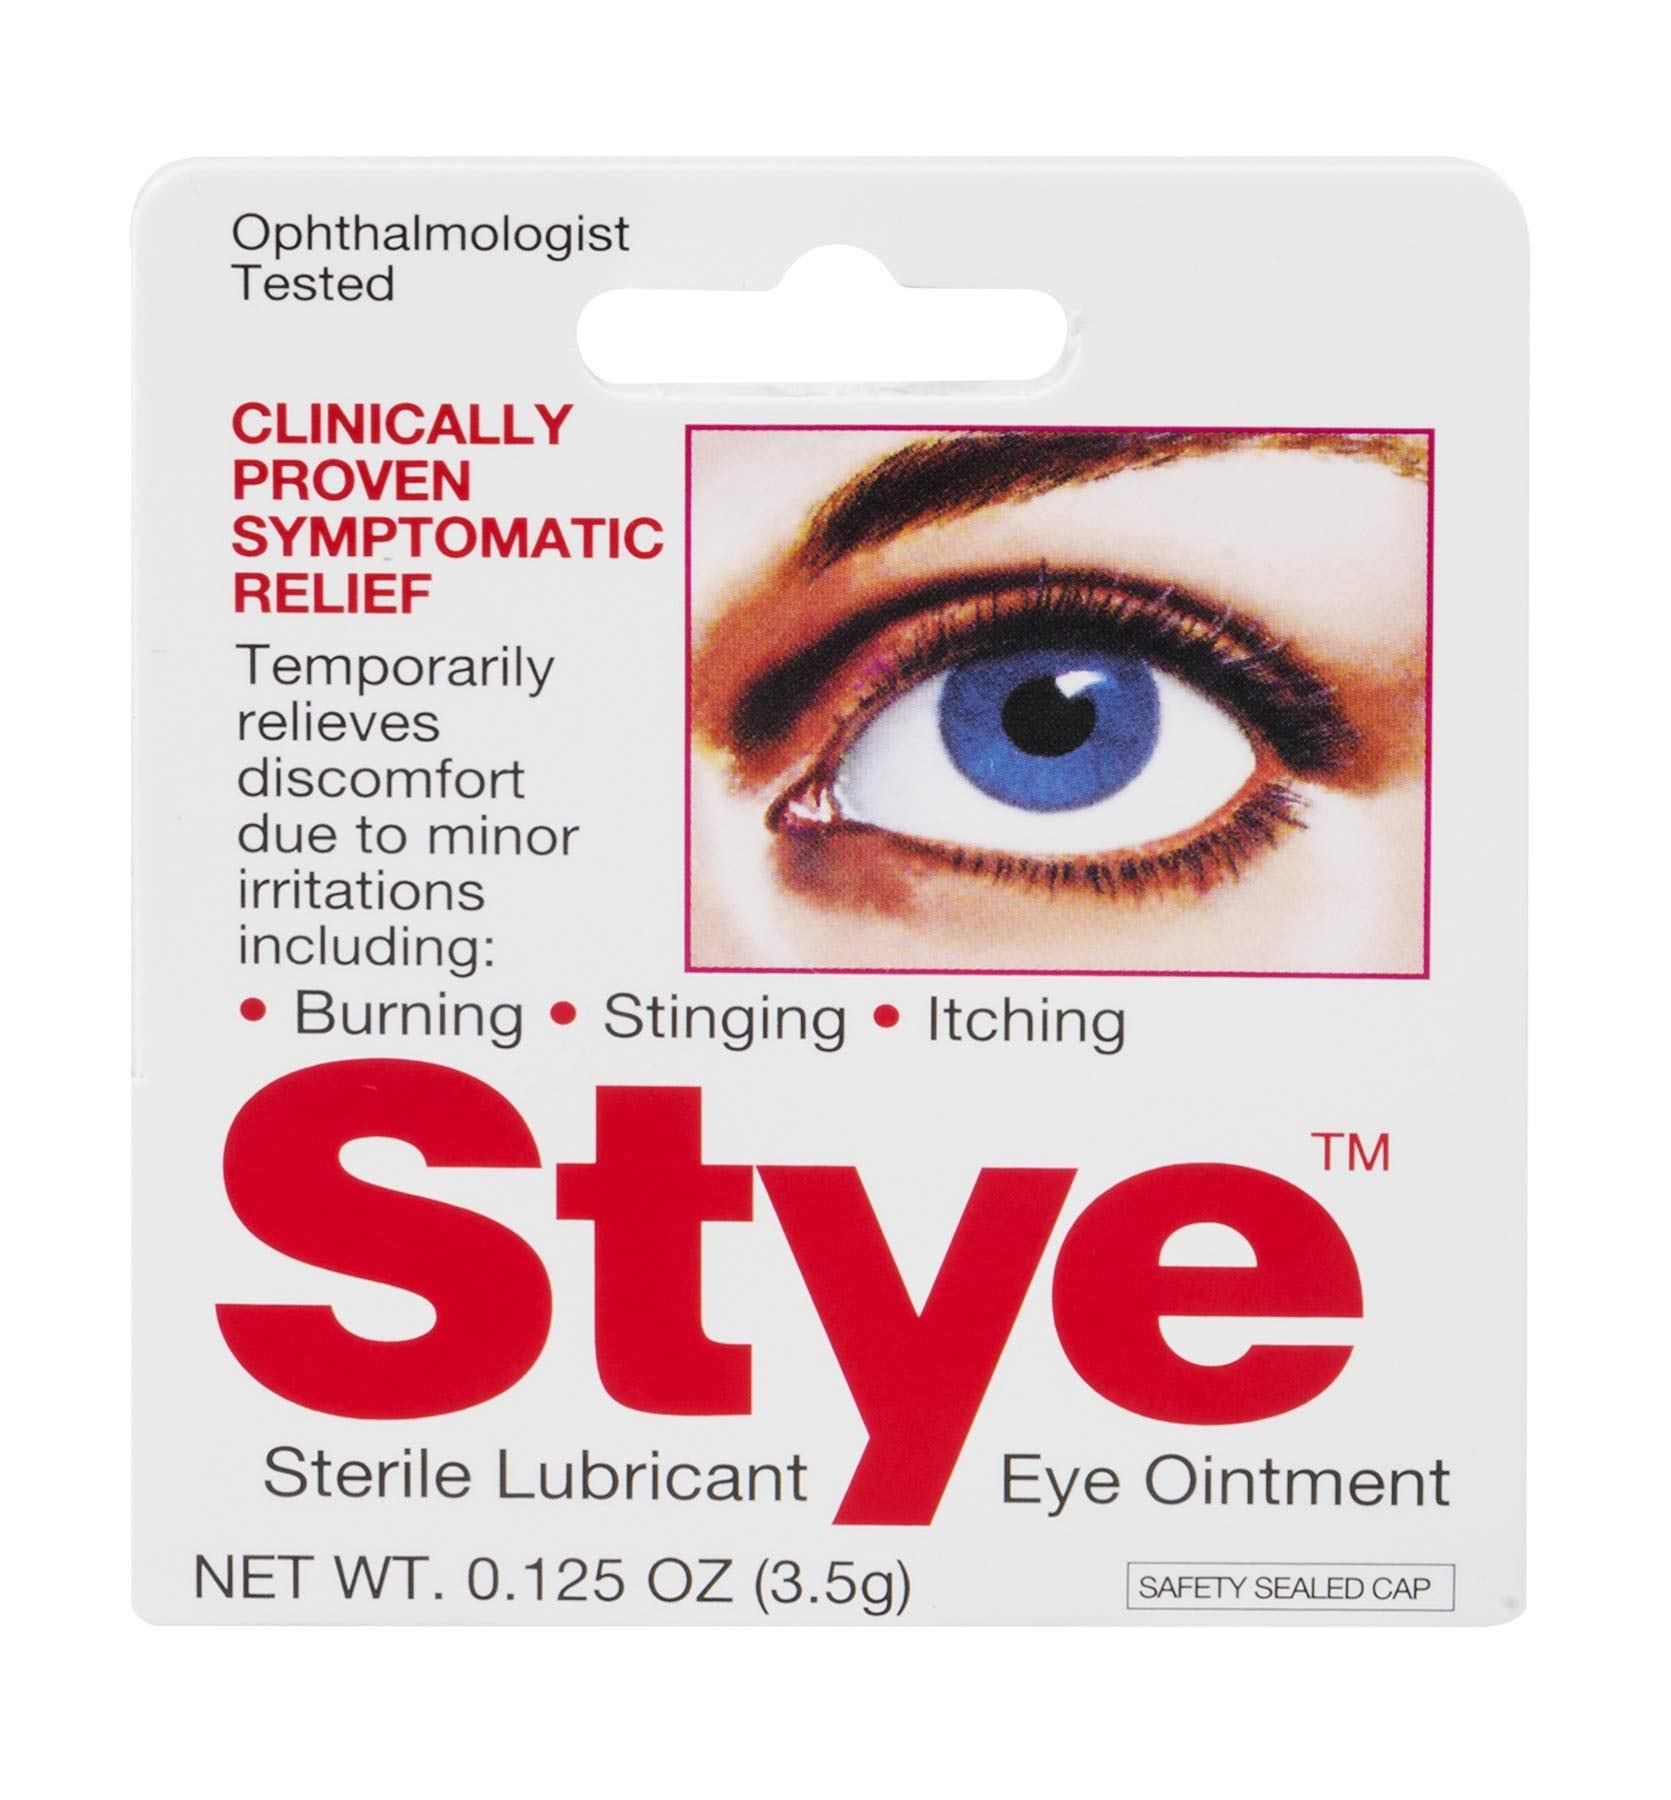 Stye Sterile Lubricant Eye Ointment, 0.13 Oz